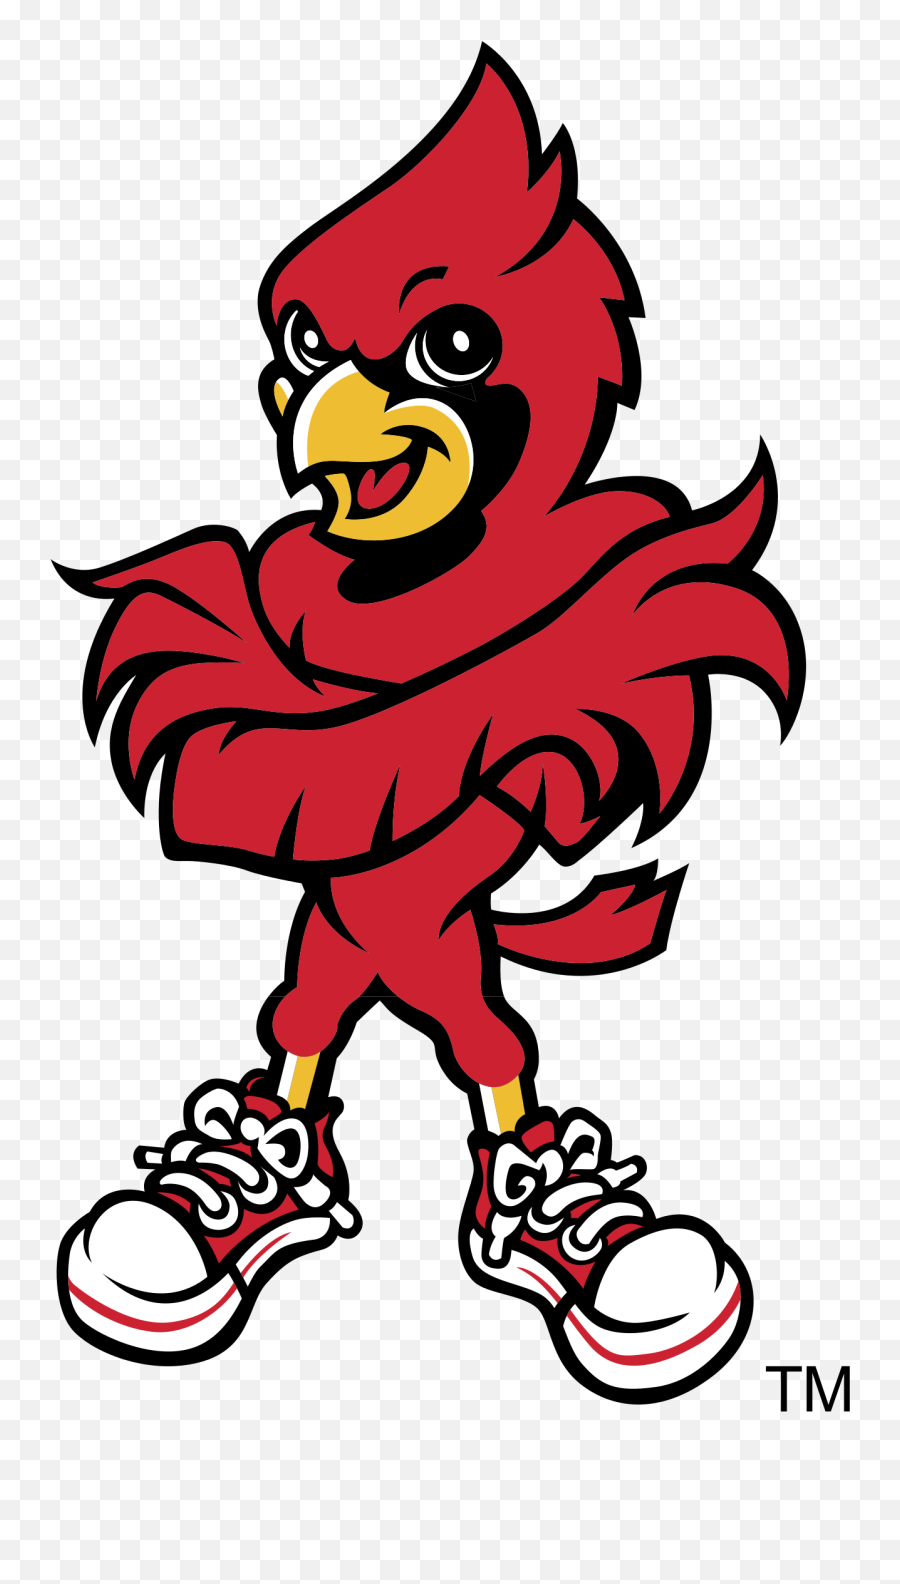 Free Cardinal Logo Png Download - Logo Louisville Cardinals Basketball,Cardinal Png